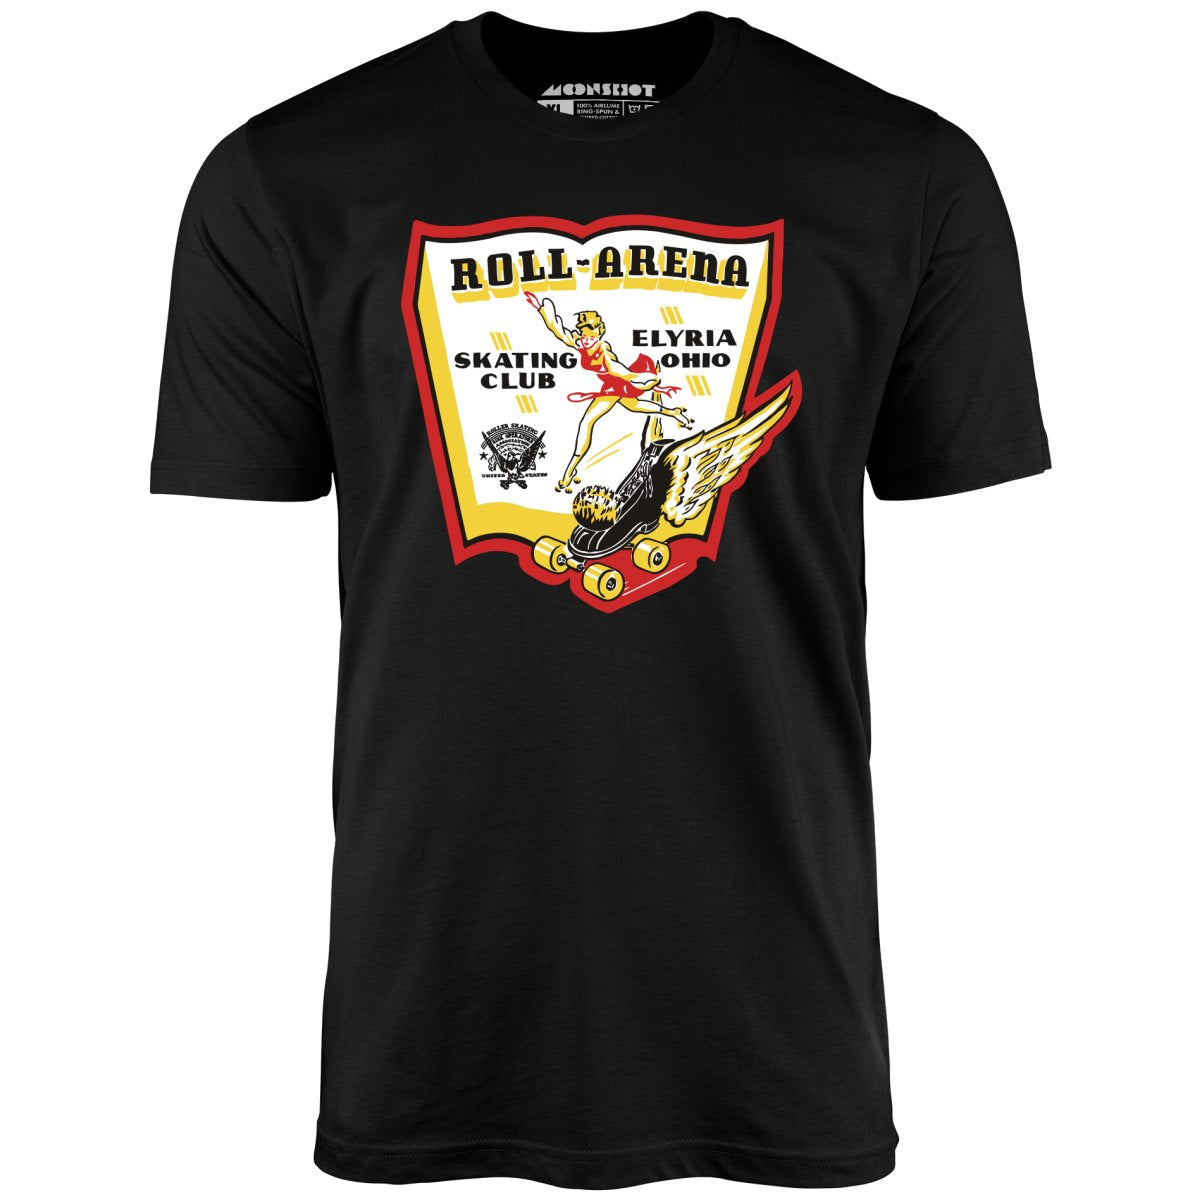 Roll-Arena - Elyria, OH - Vintage Roller Rink - Unisex T-Shirt